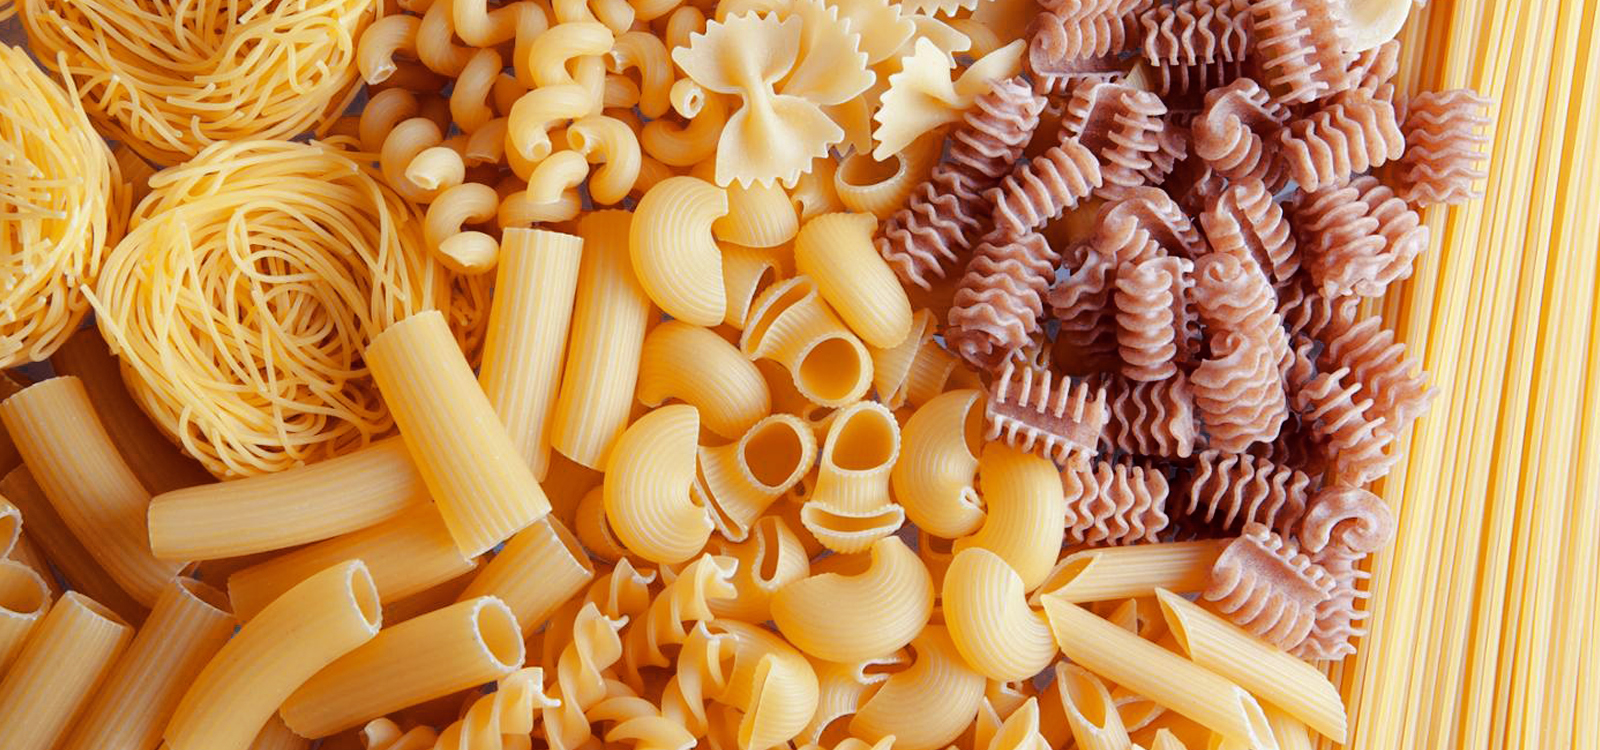 noodle pasta